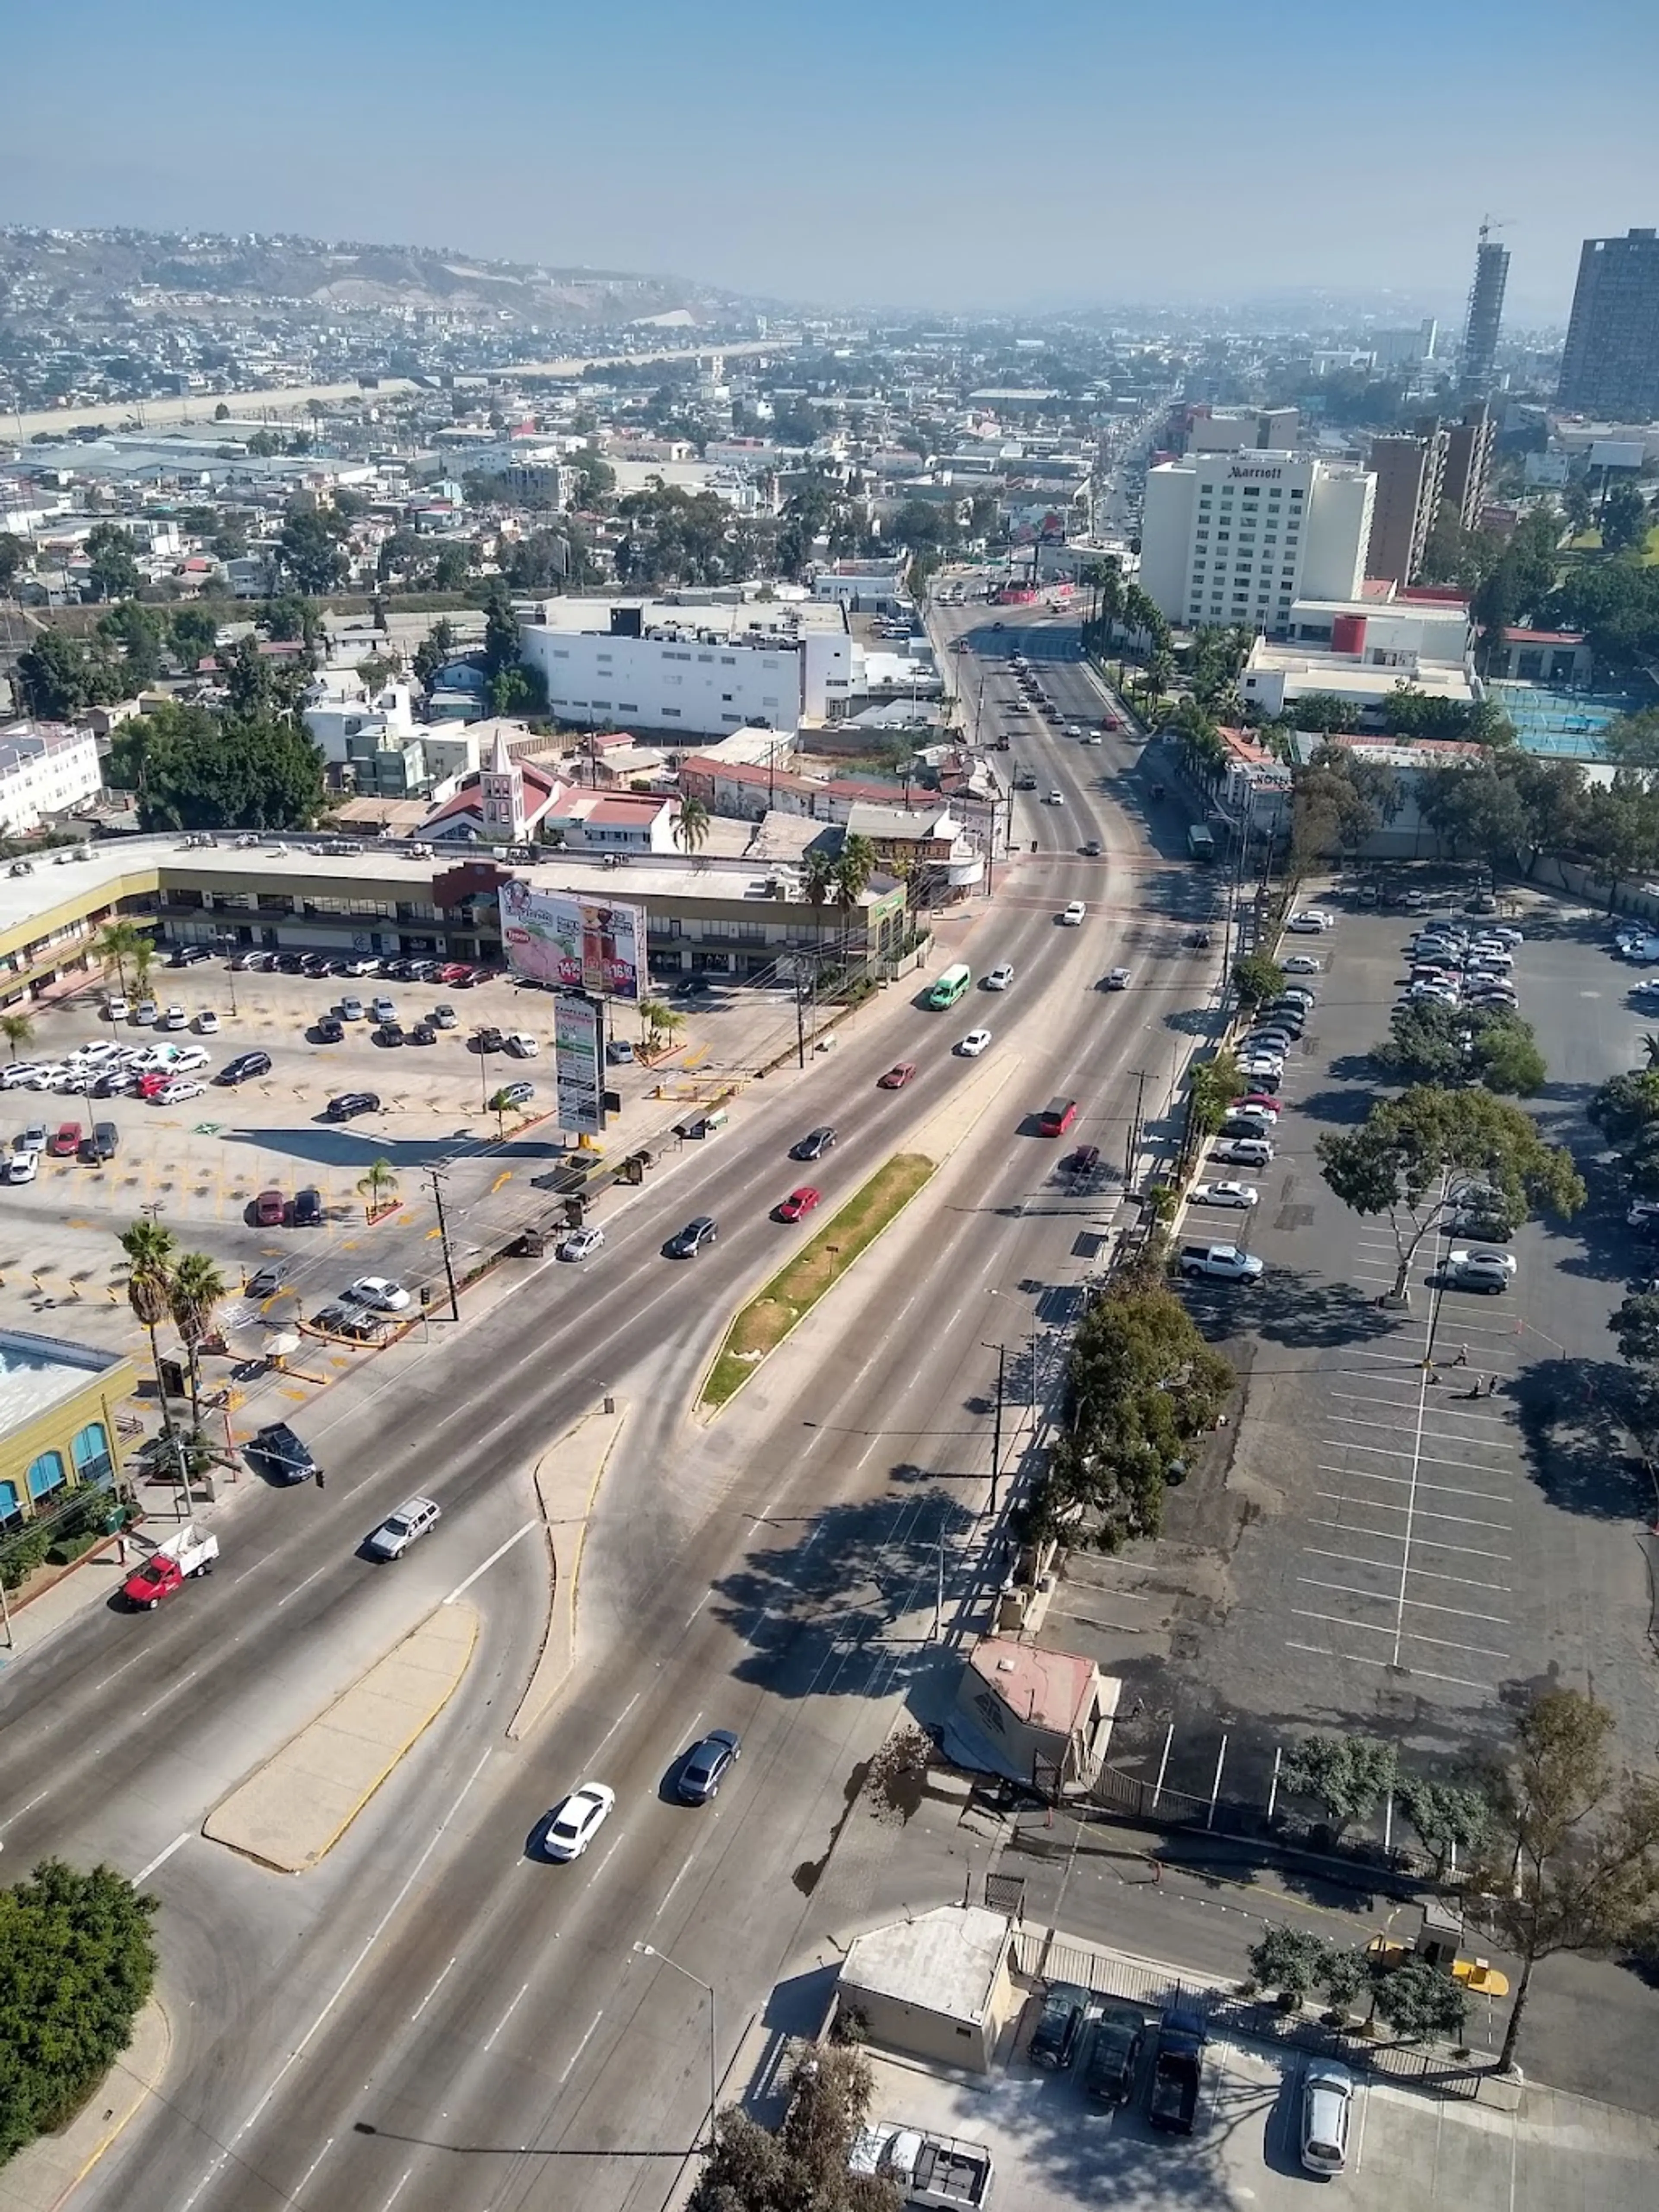 Tijuana's city center